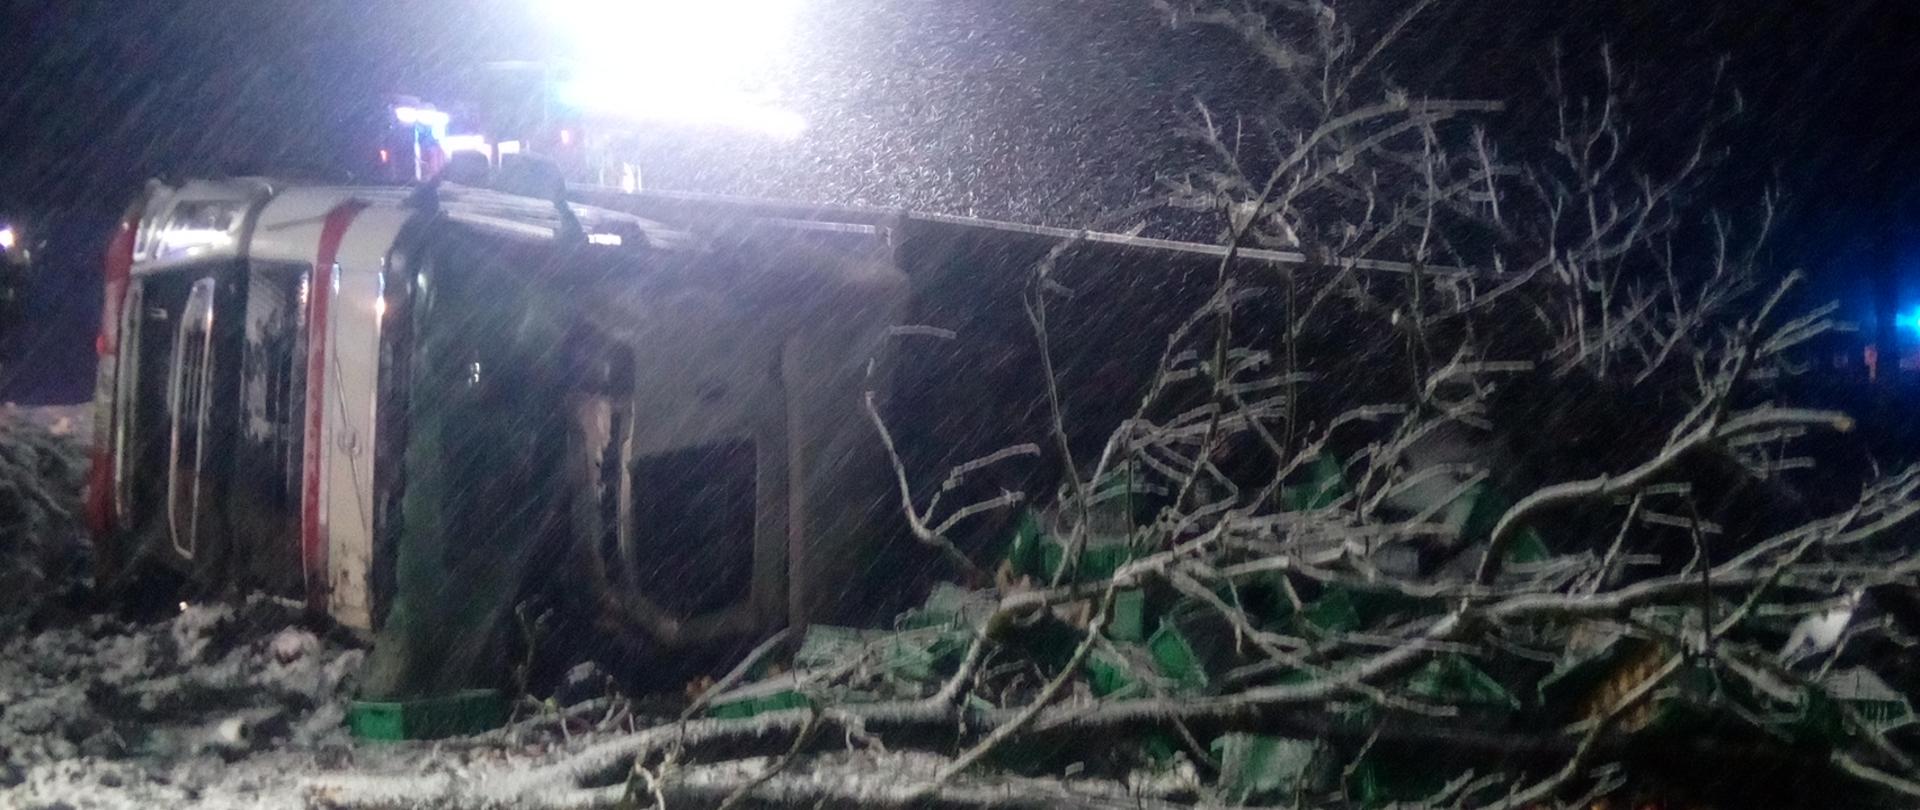 Na zdjęciu widać przewrócony ciągnik siodłowy z naczepą a obok złamane drzewo. 